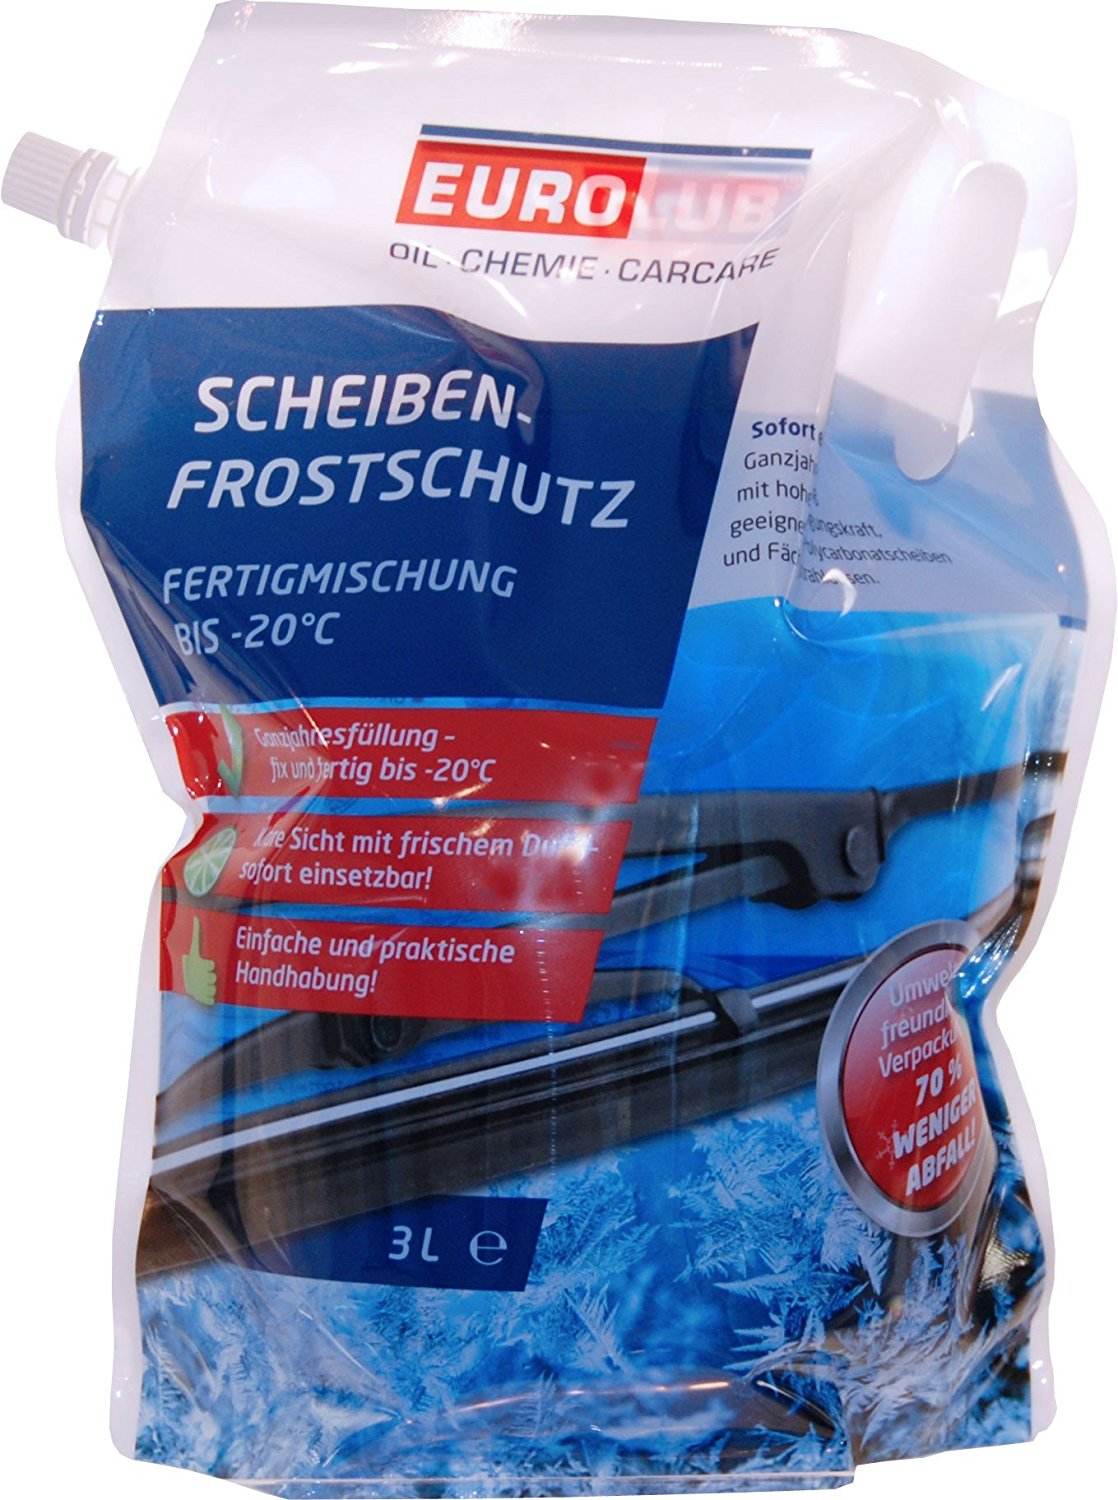 Eurolub Scheibenfrostschutz Mountainfresh Fertigmischung -20°C Beutel 3 Liter